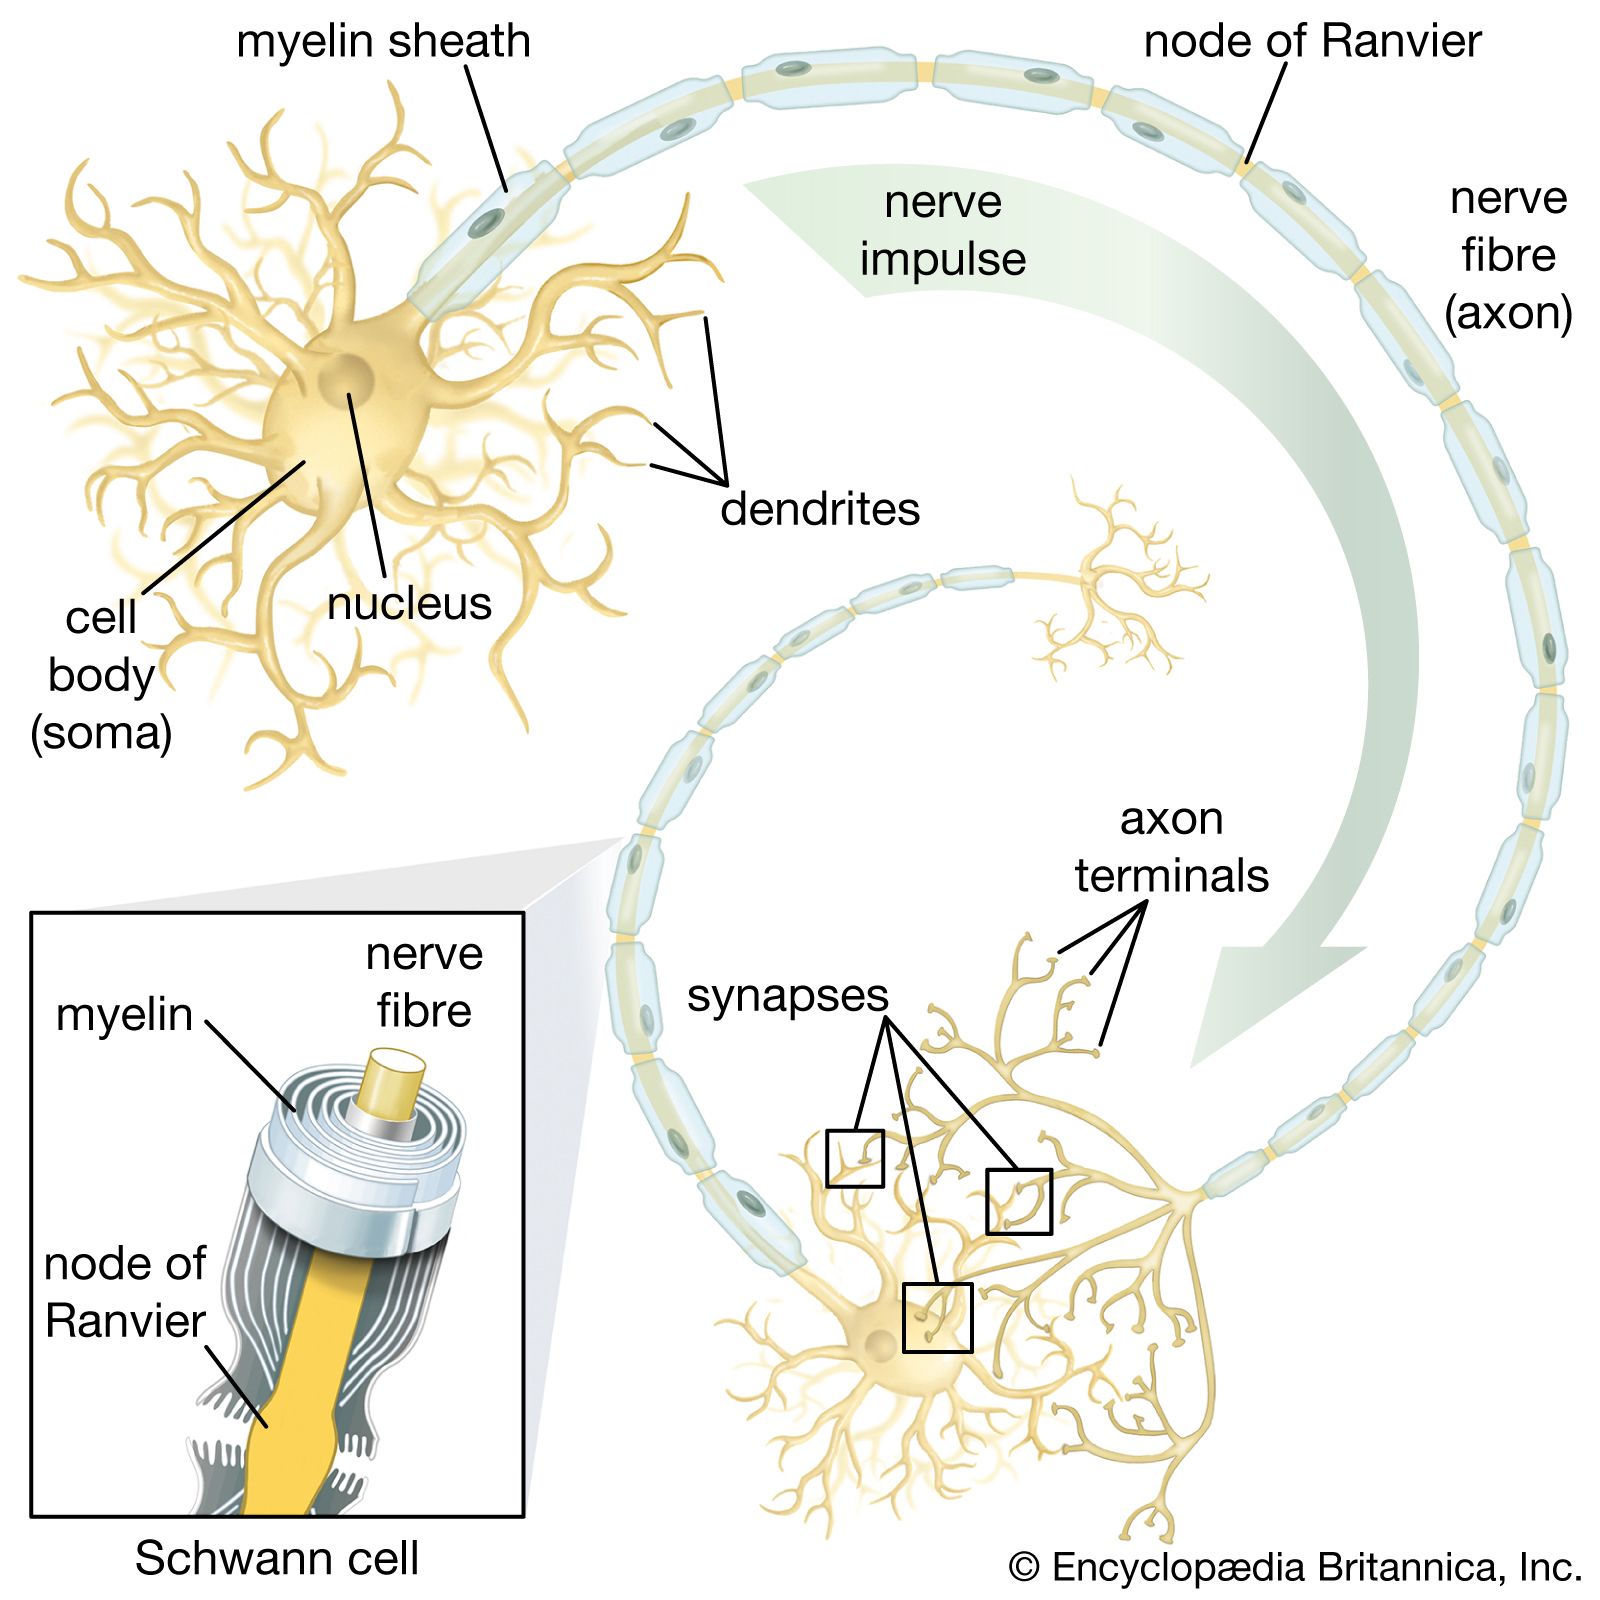 ability-neural-stem-cells-motor-neurons-rise.jpg